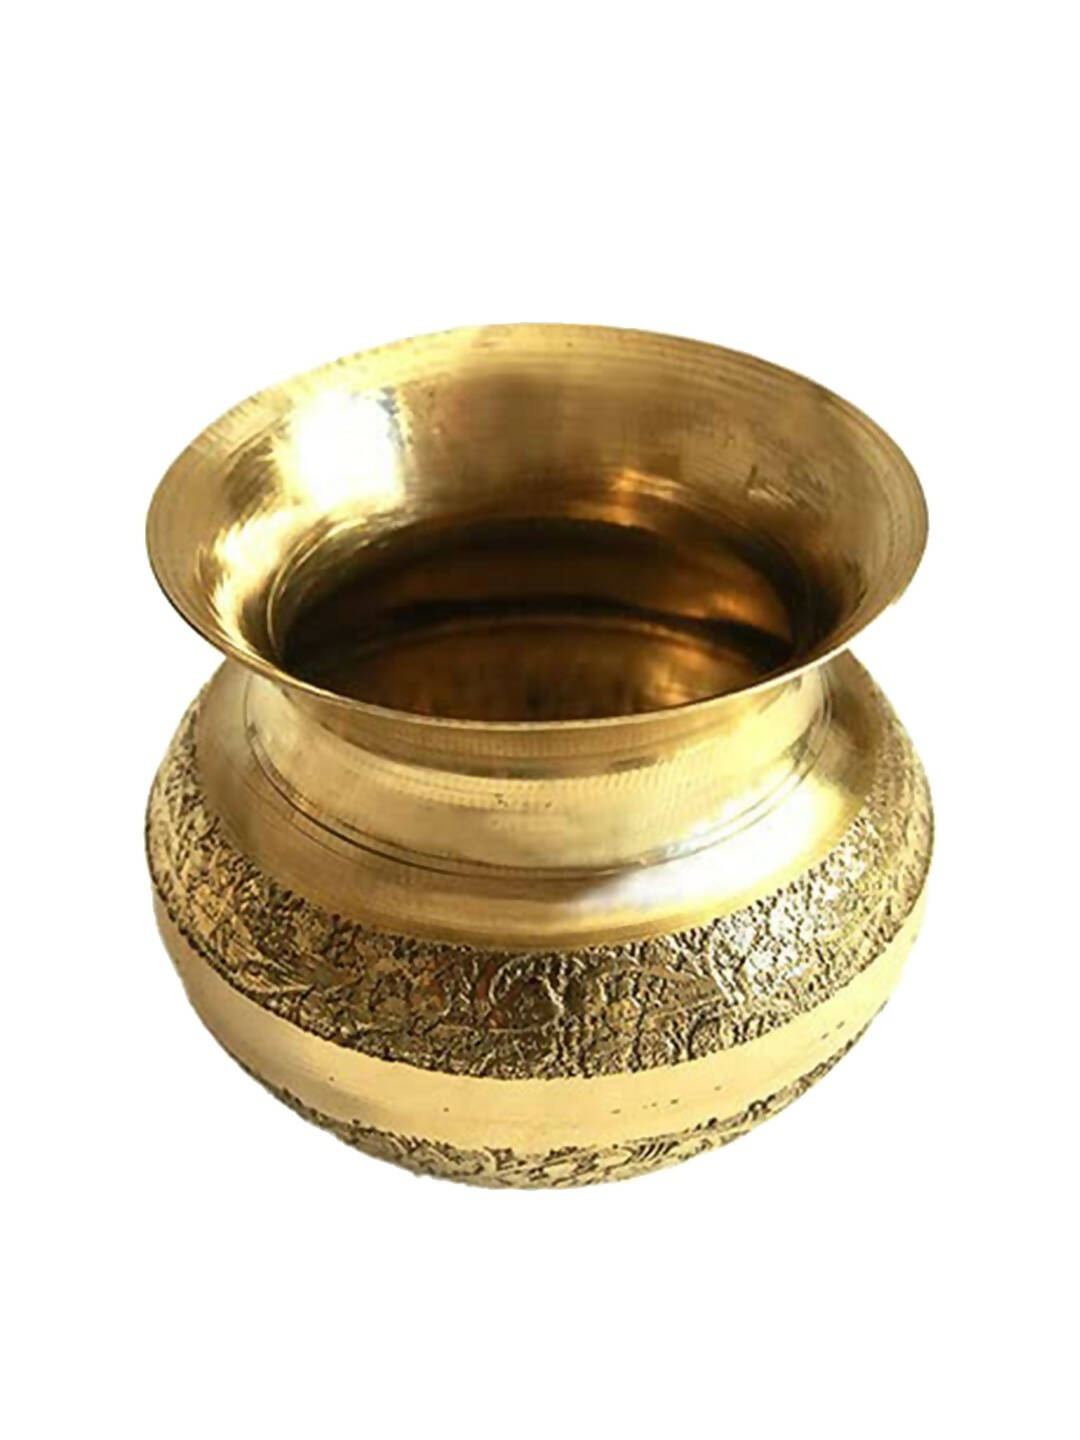 Buy PujaNPujari Gold-Toned Brass Pooja Kalash Lota Online at Best Price